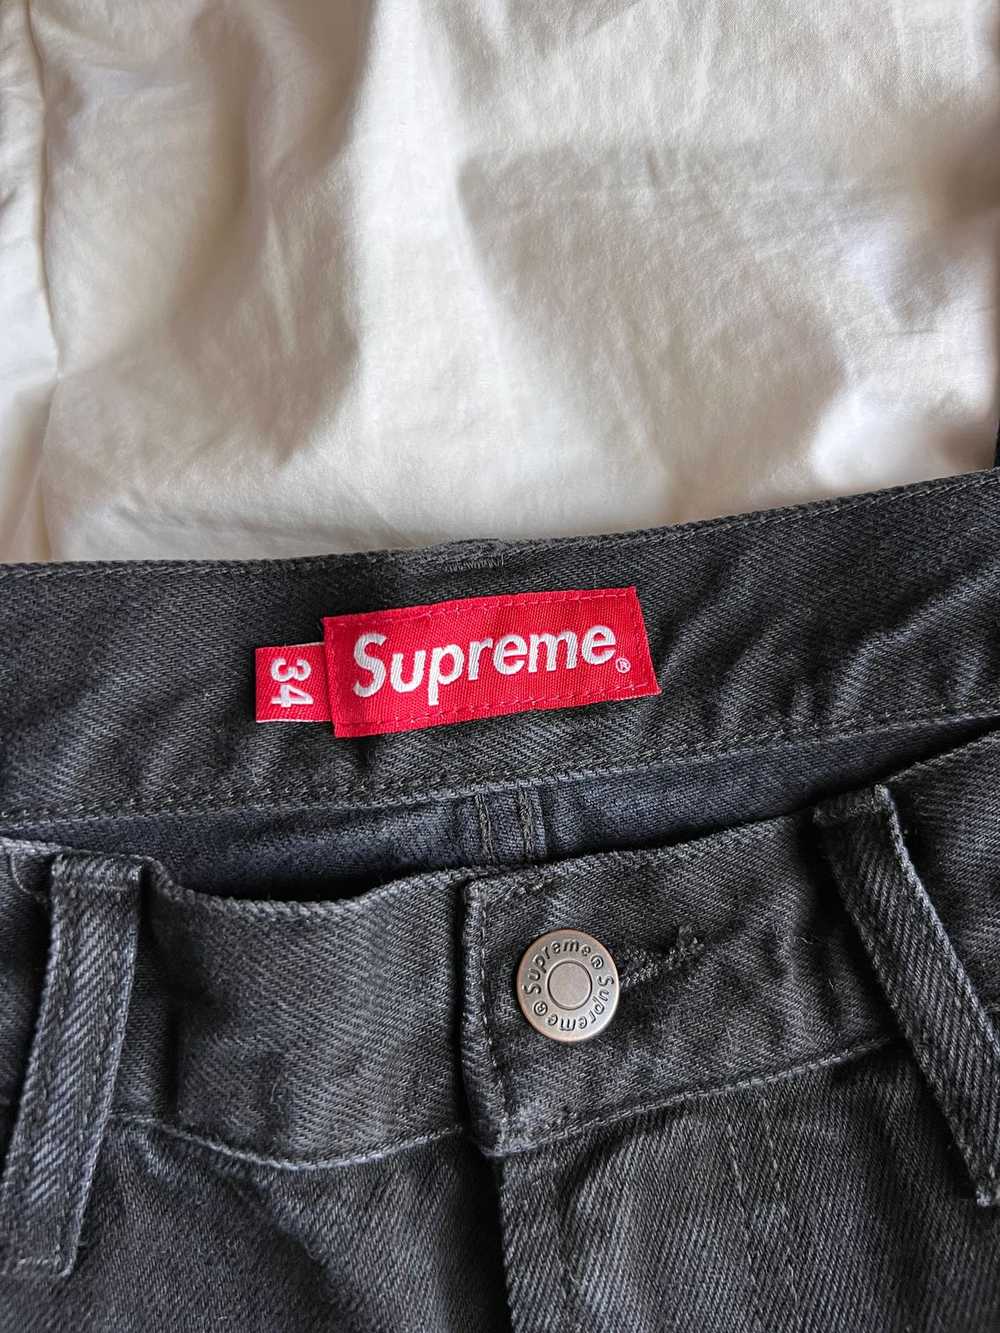 Supreme Supreme Shibori Loose Fit Denim Jeans in … - image 7